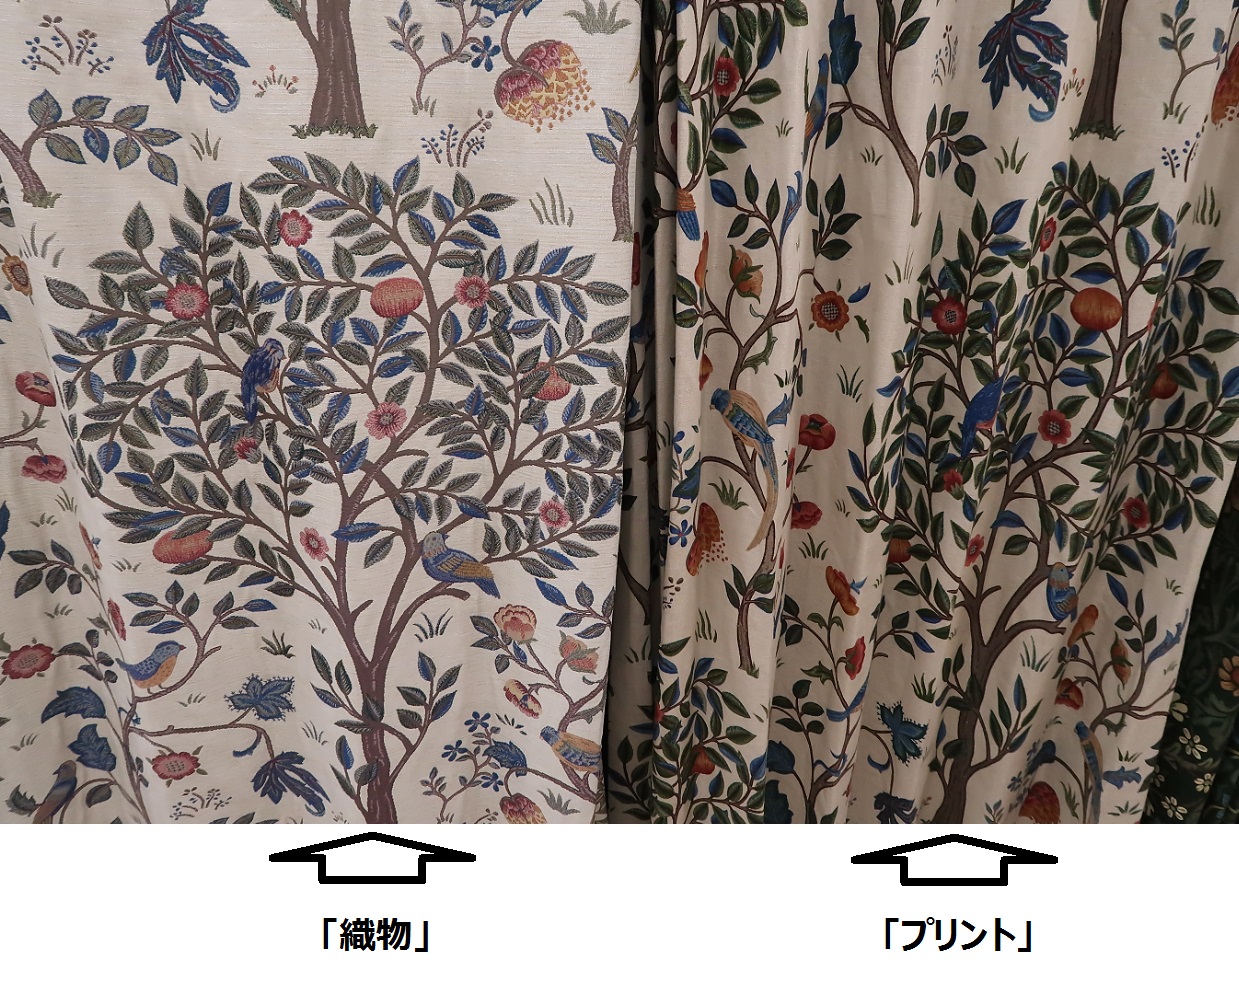 川島織物セルコンの『ケルムスコットツリー』、『いちご泥棒』。ウィリアム・モリスの新作展示品が入荷しました。